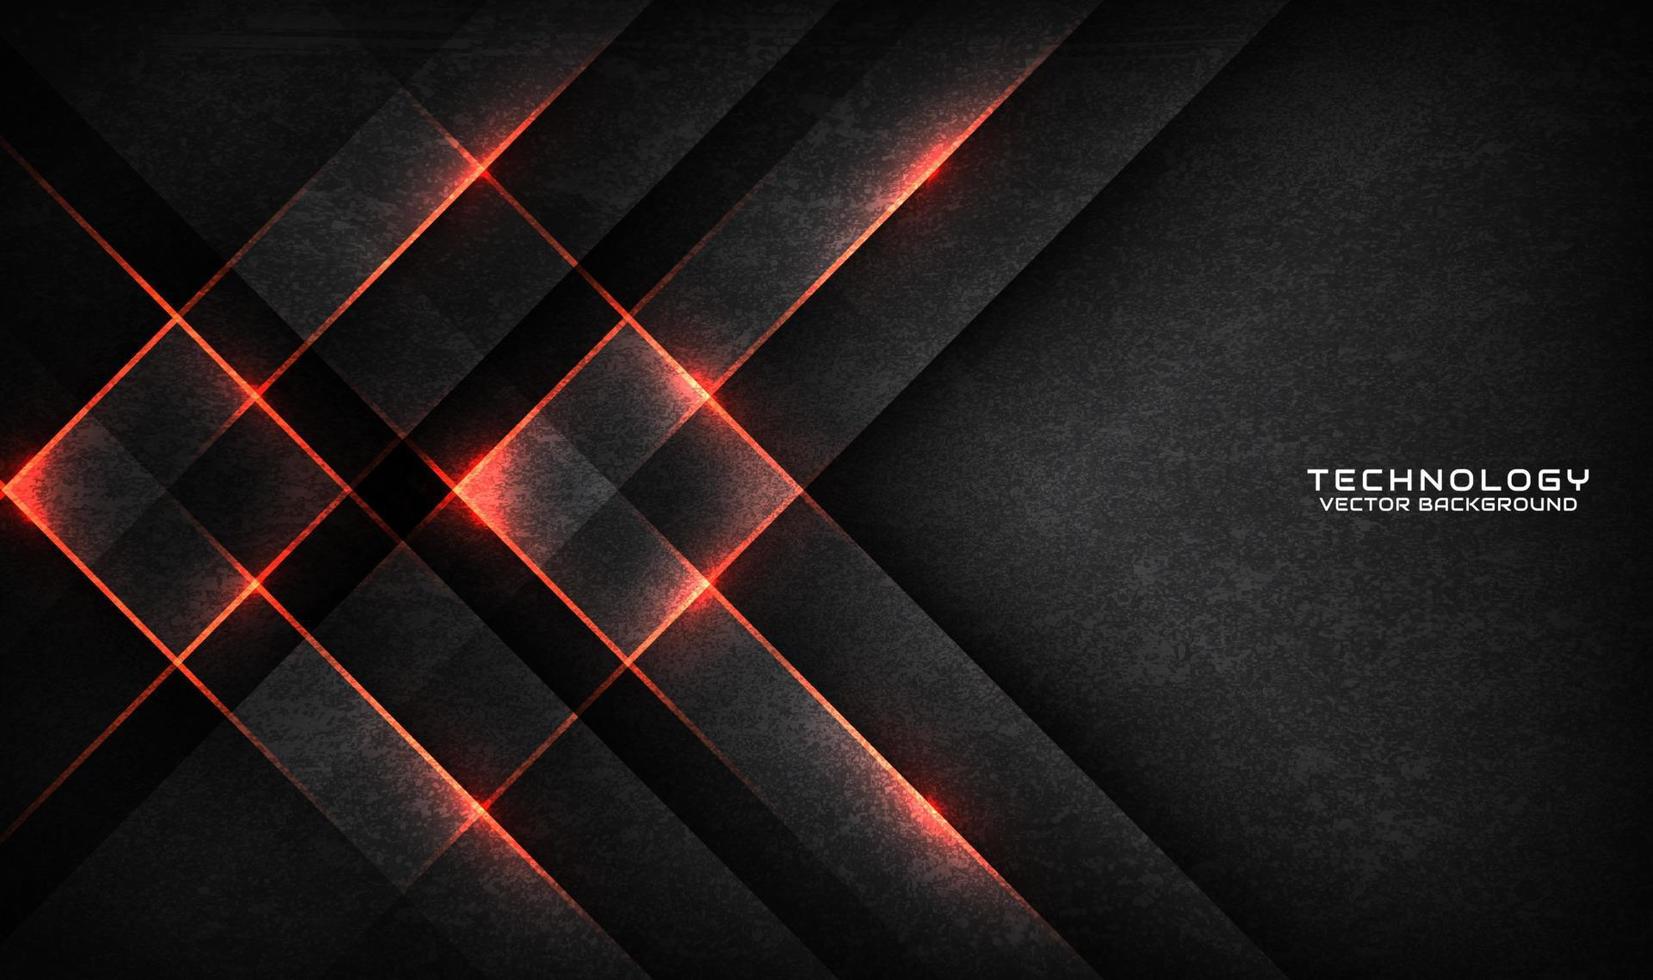 3d graue grobe Grunge-Technologie abstrakte Hintergrundüberlappungsschicht auf dunklem Raum mit orangefarbenem Lichteffekt. modernes grafikdesign-element-schnittkonzept für banner, flyer, karte oder broschüreneinband vektor